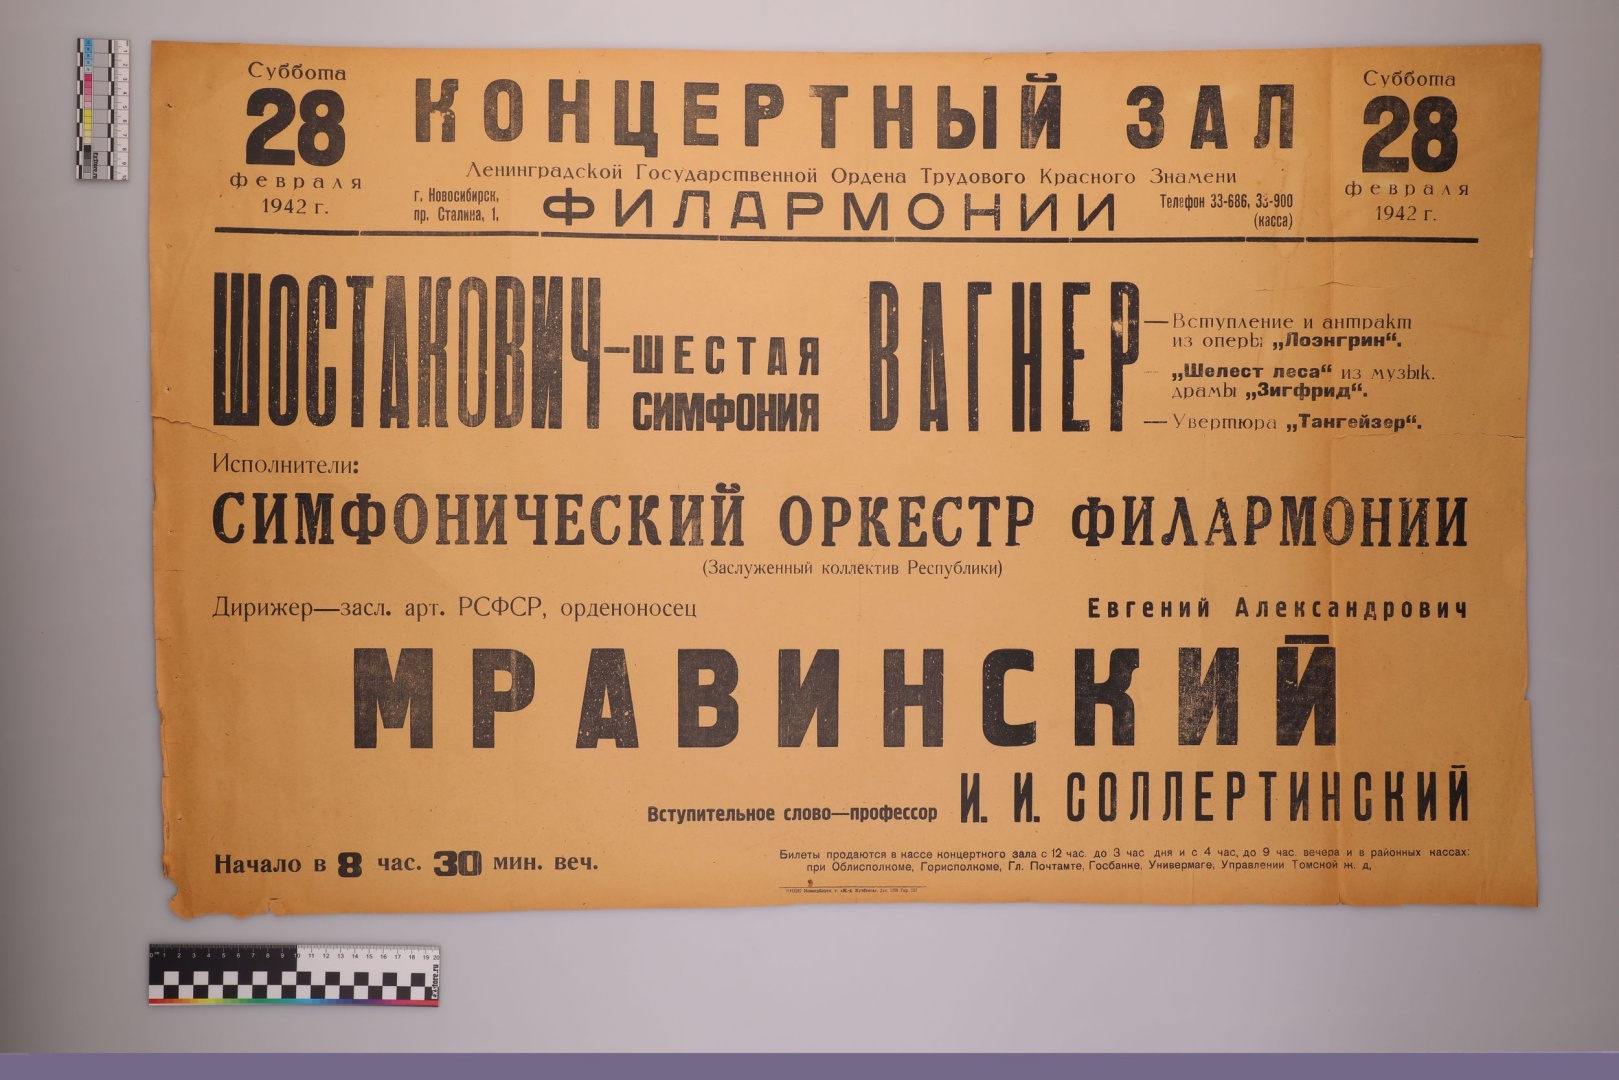 Обложка - Афиша 28 февраля 1942 года до реставрации. Фото: СПбИИ РАН